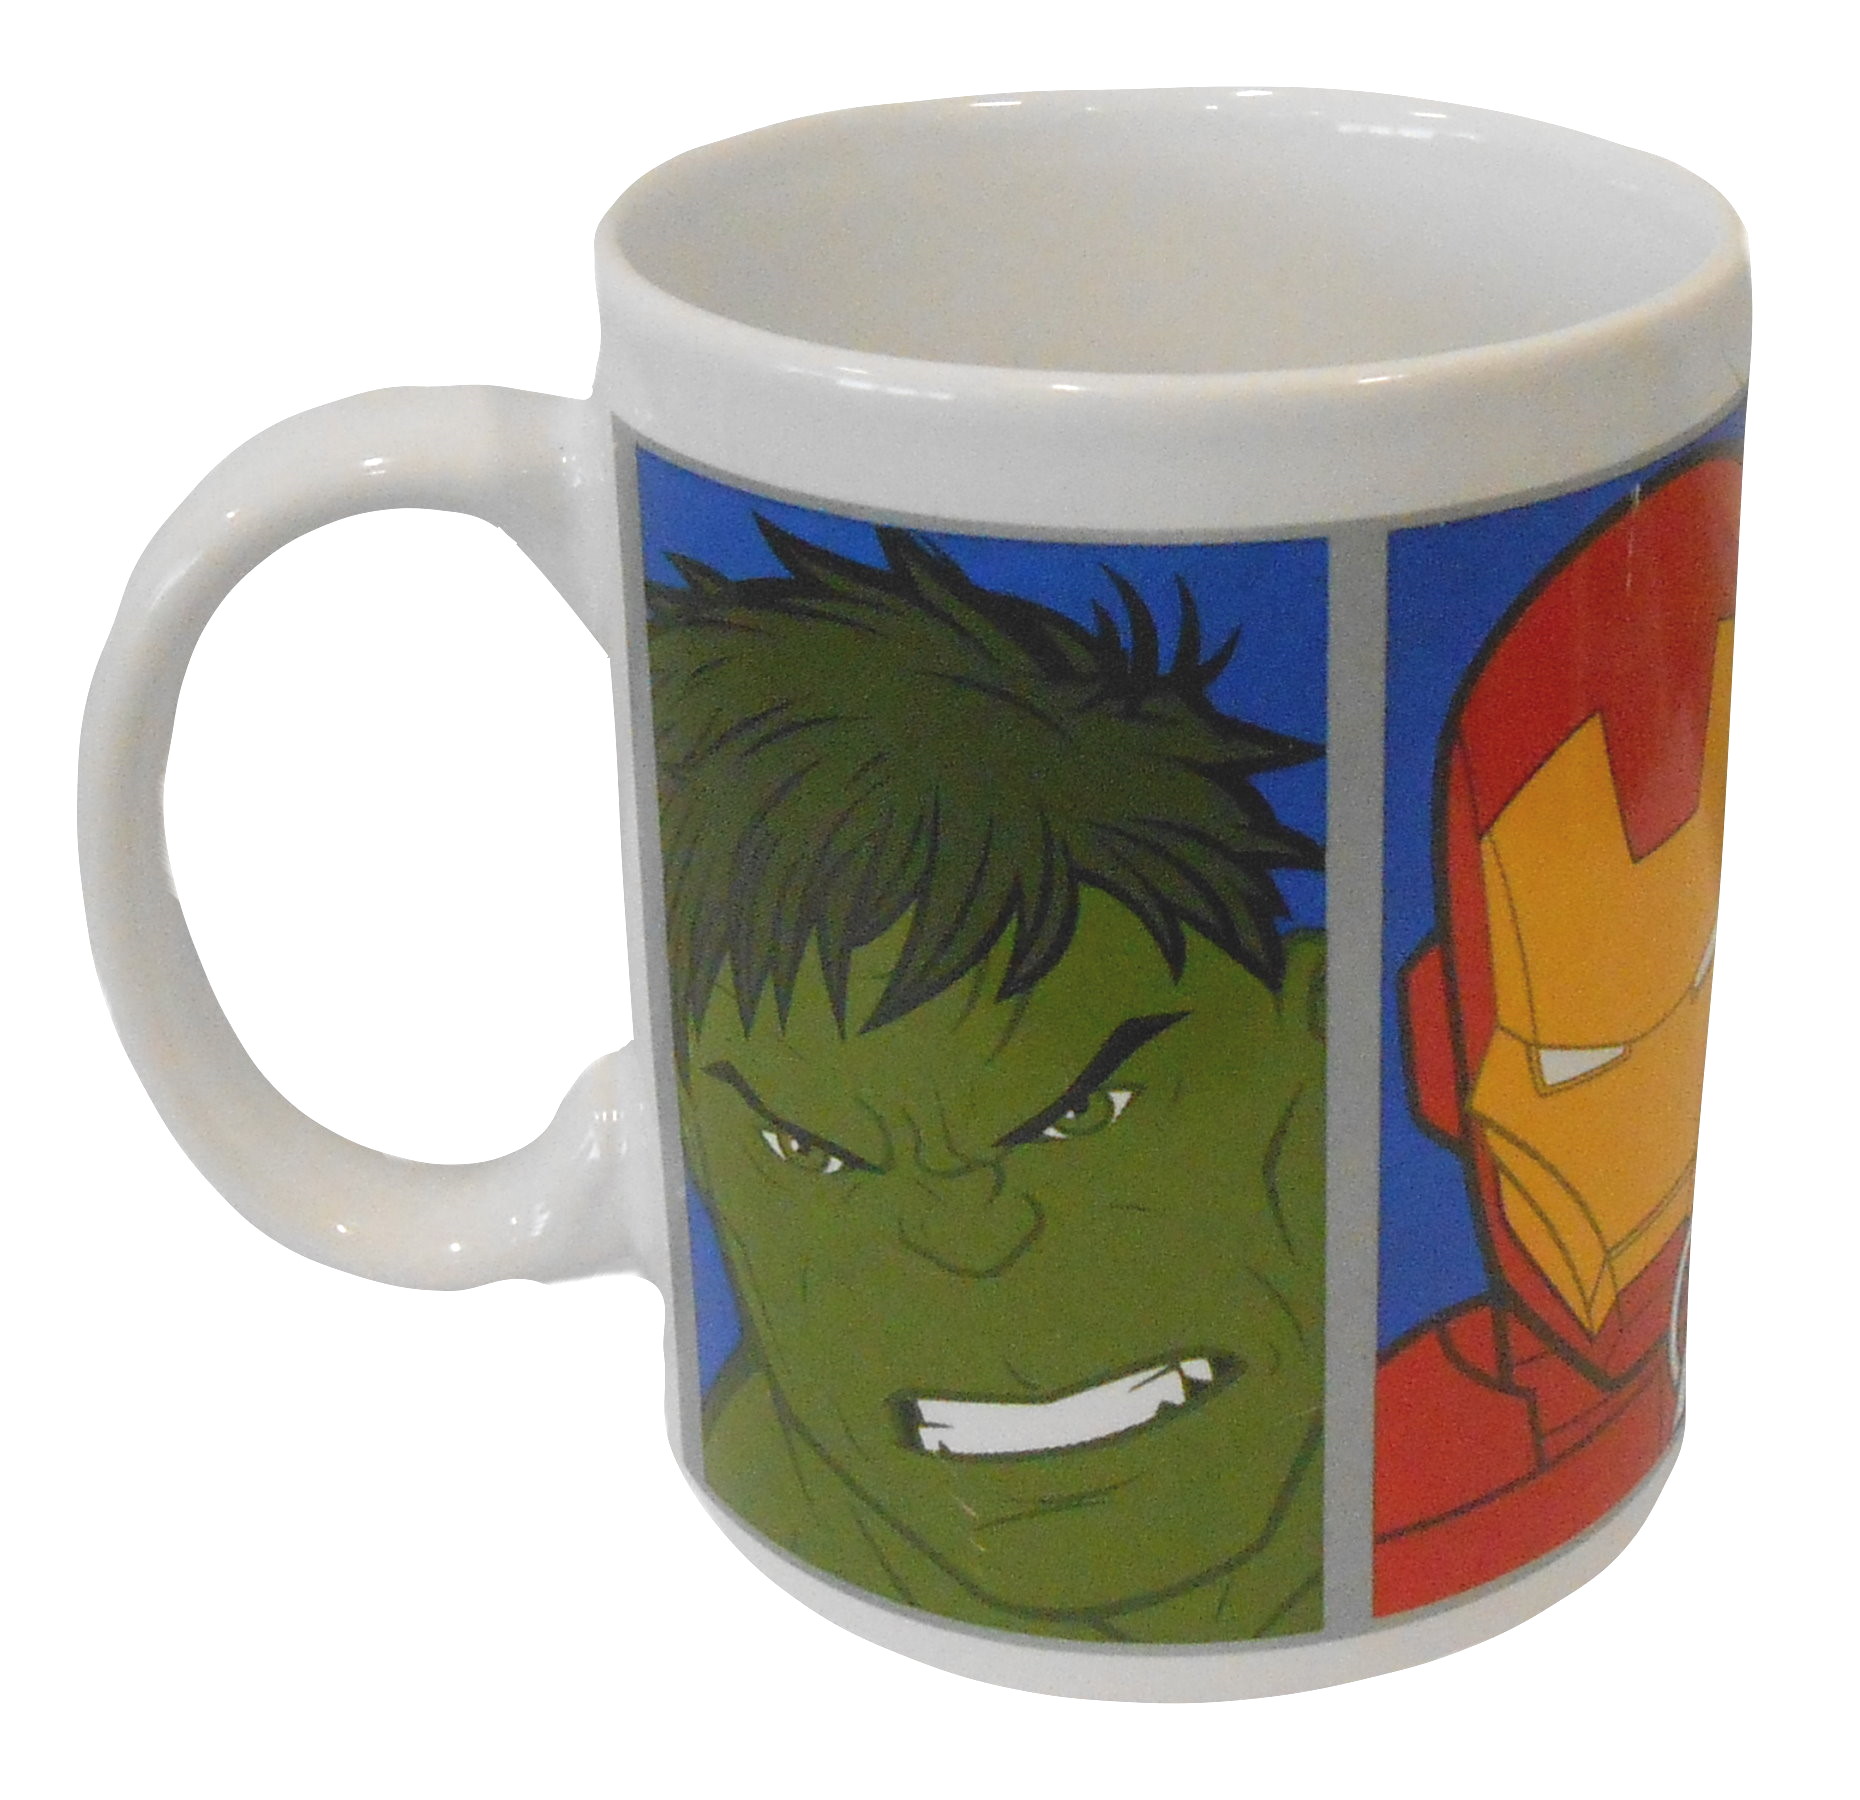 Marvel Avengers Mug 10190_BLUE.JPG  by Thingimijigs